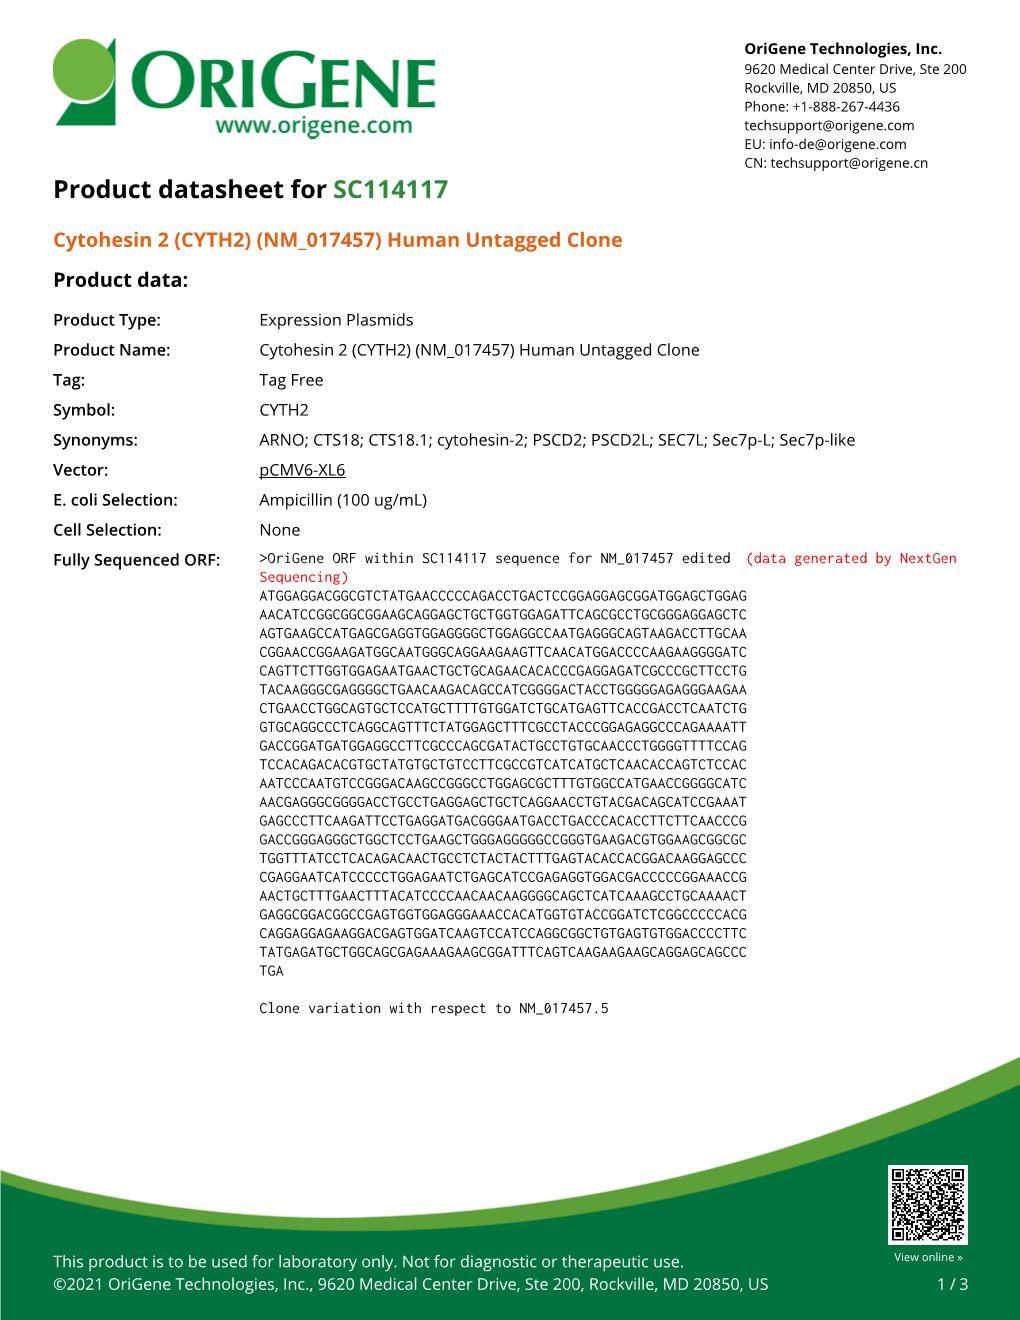 Cytohesin 2 (CYTH2) (NM 017457) Human Untagged Clone Product Data